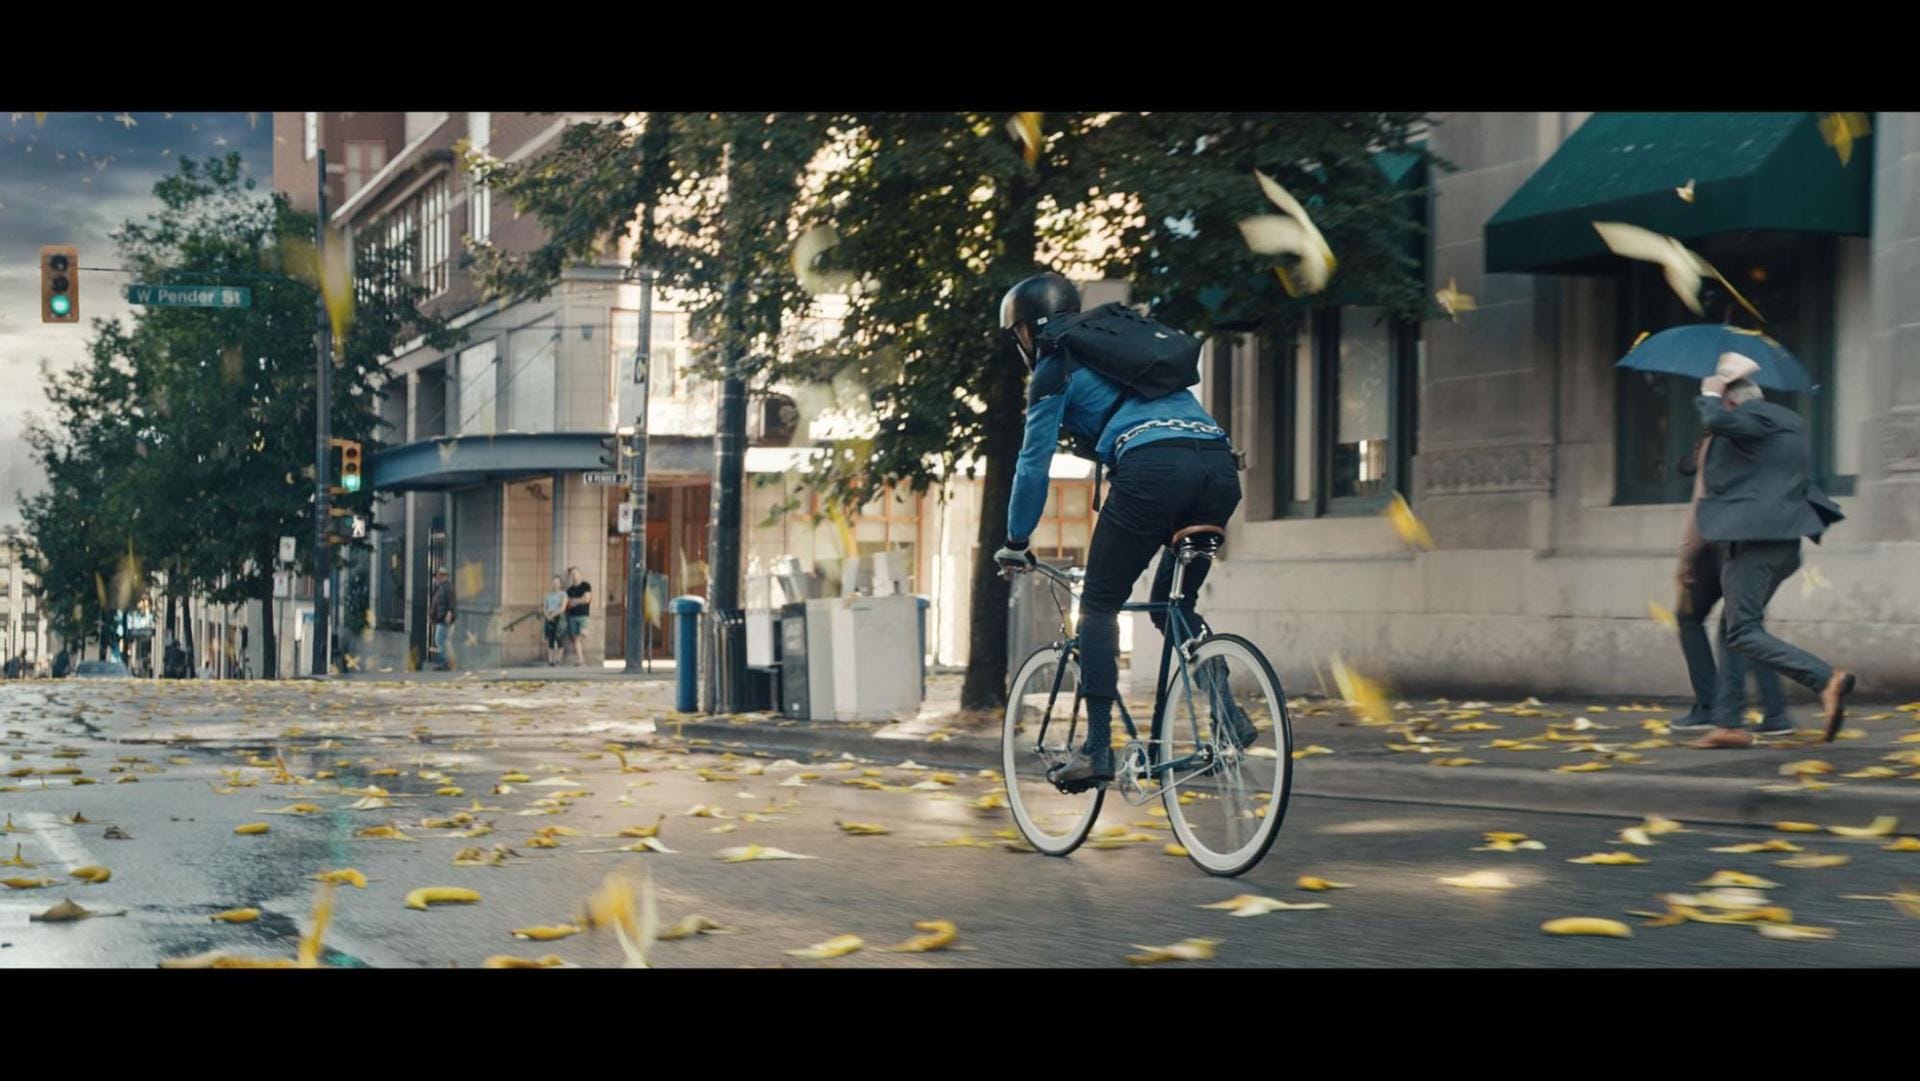 A cyclist rides down a banana-strewn street